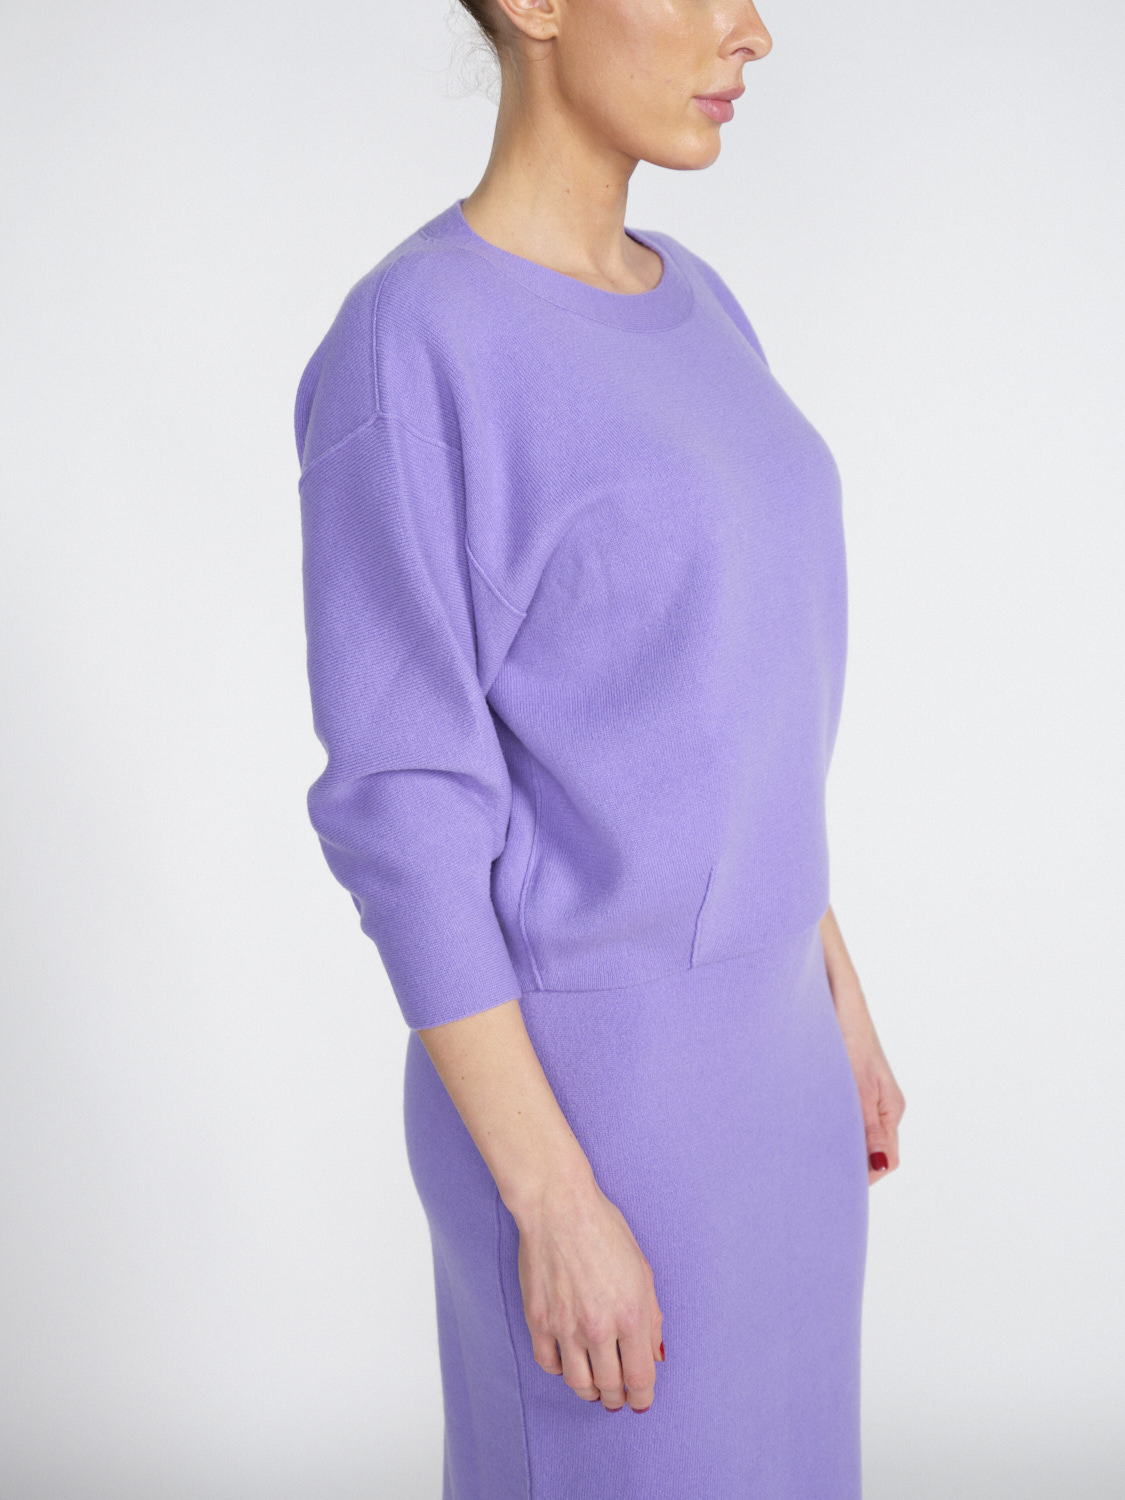 Iris von Arnim Arielle - Cropped cashmere jumper  lila S